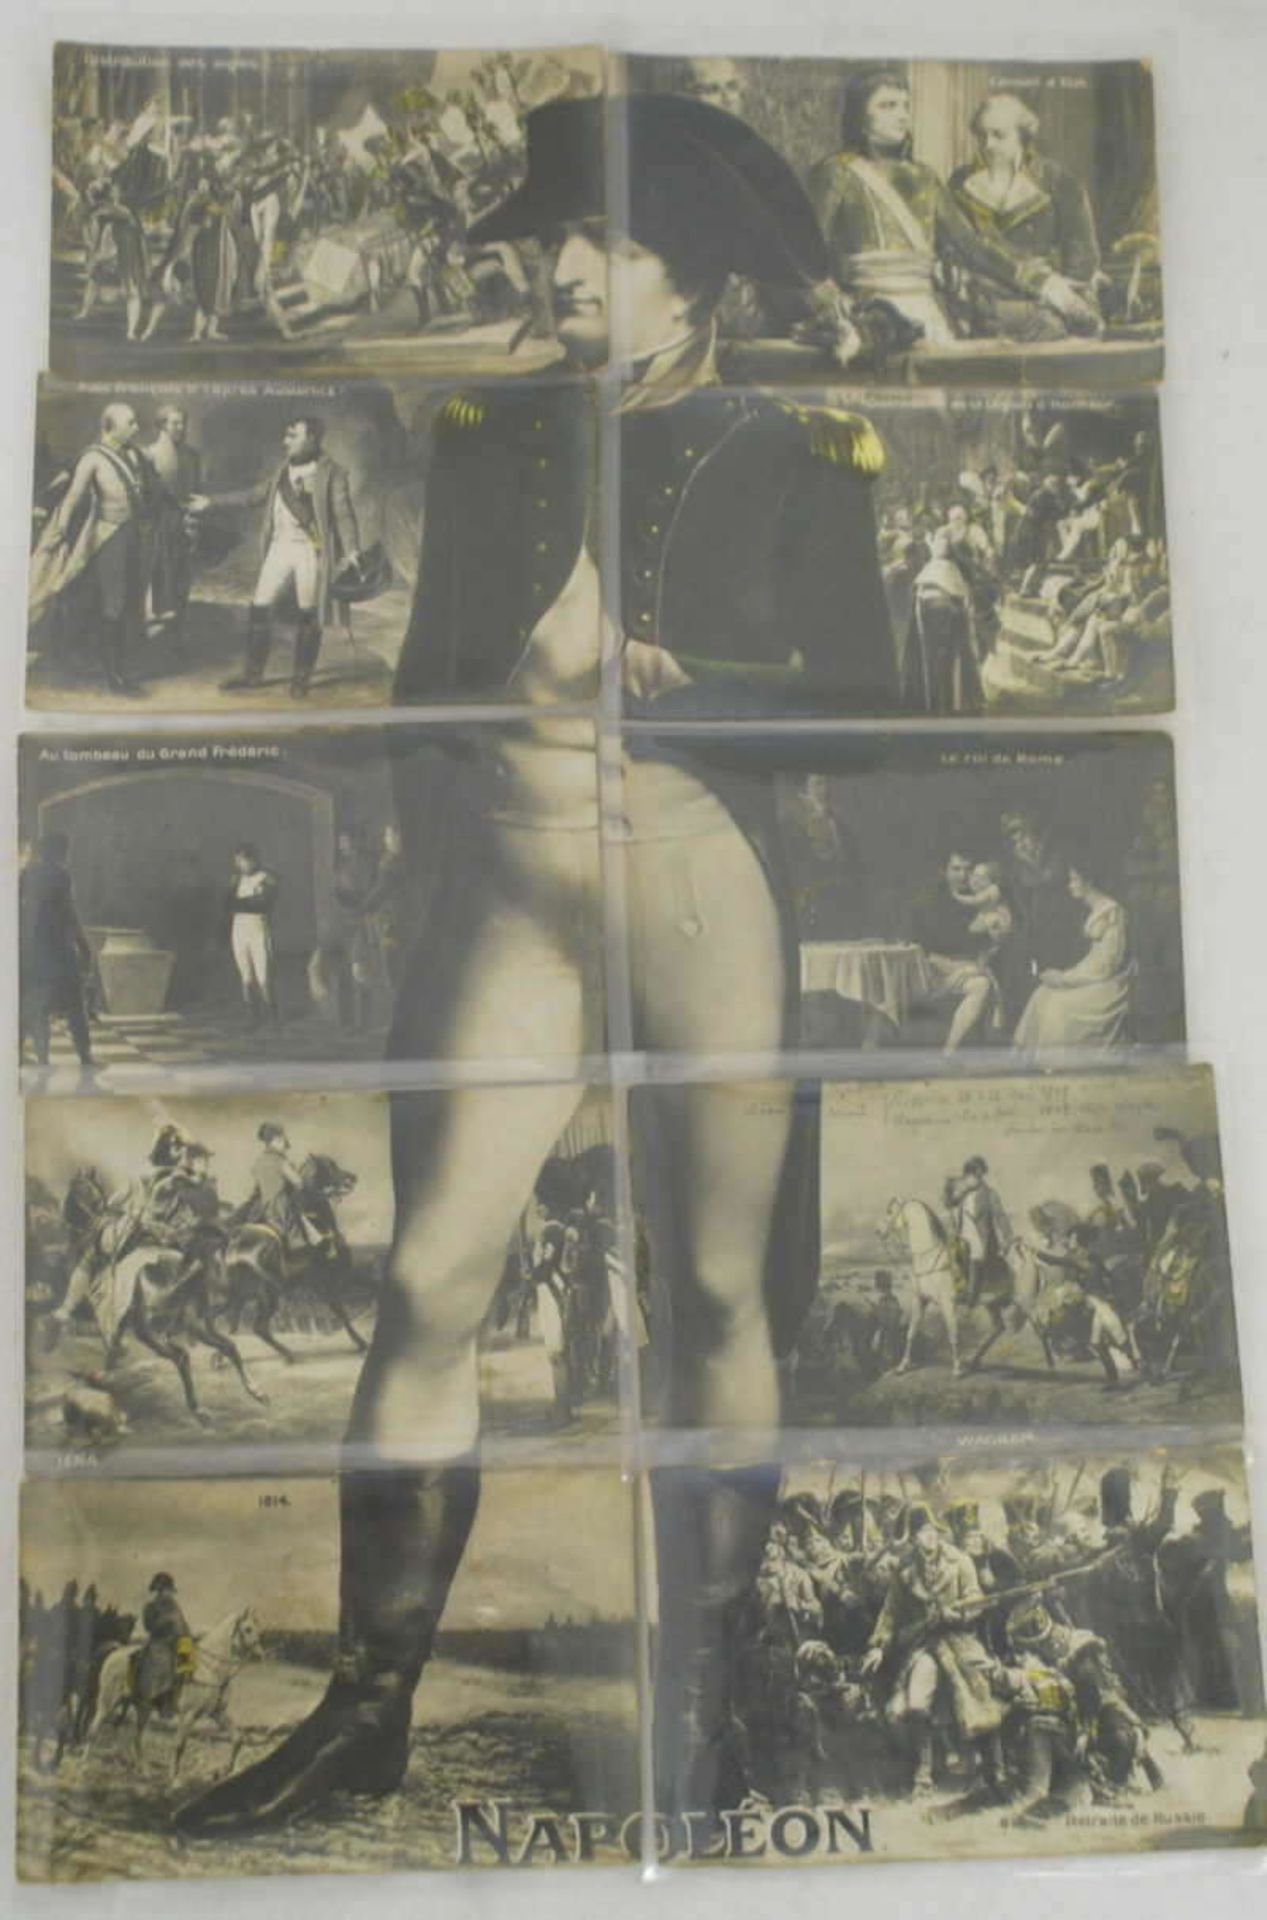 ausgefallene Postkartenserie "Napoleon" insgesamt 10 Stück. beim aneinander legen der Karten